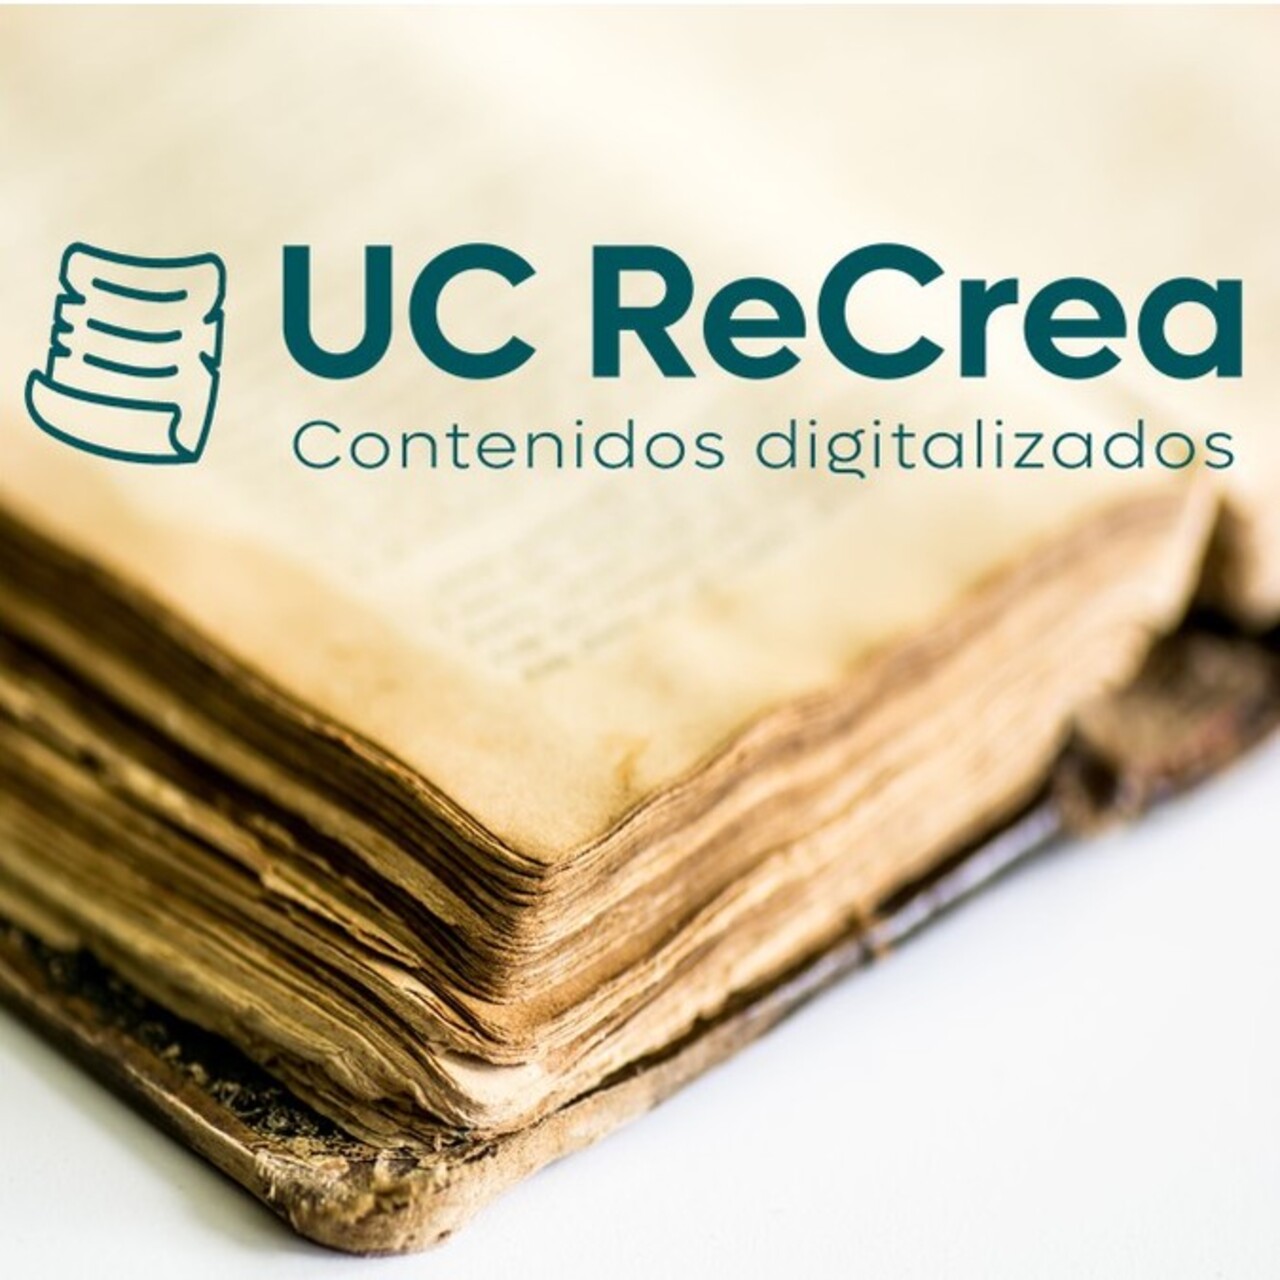 UC ReCrea, exposición digital de la herencia cultural